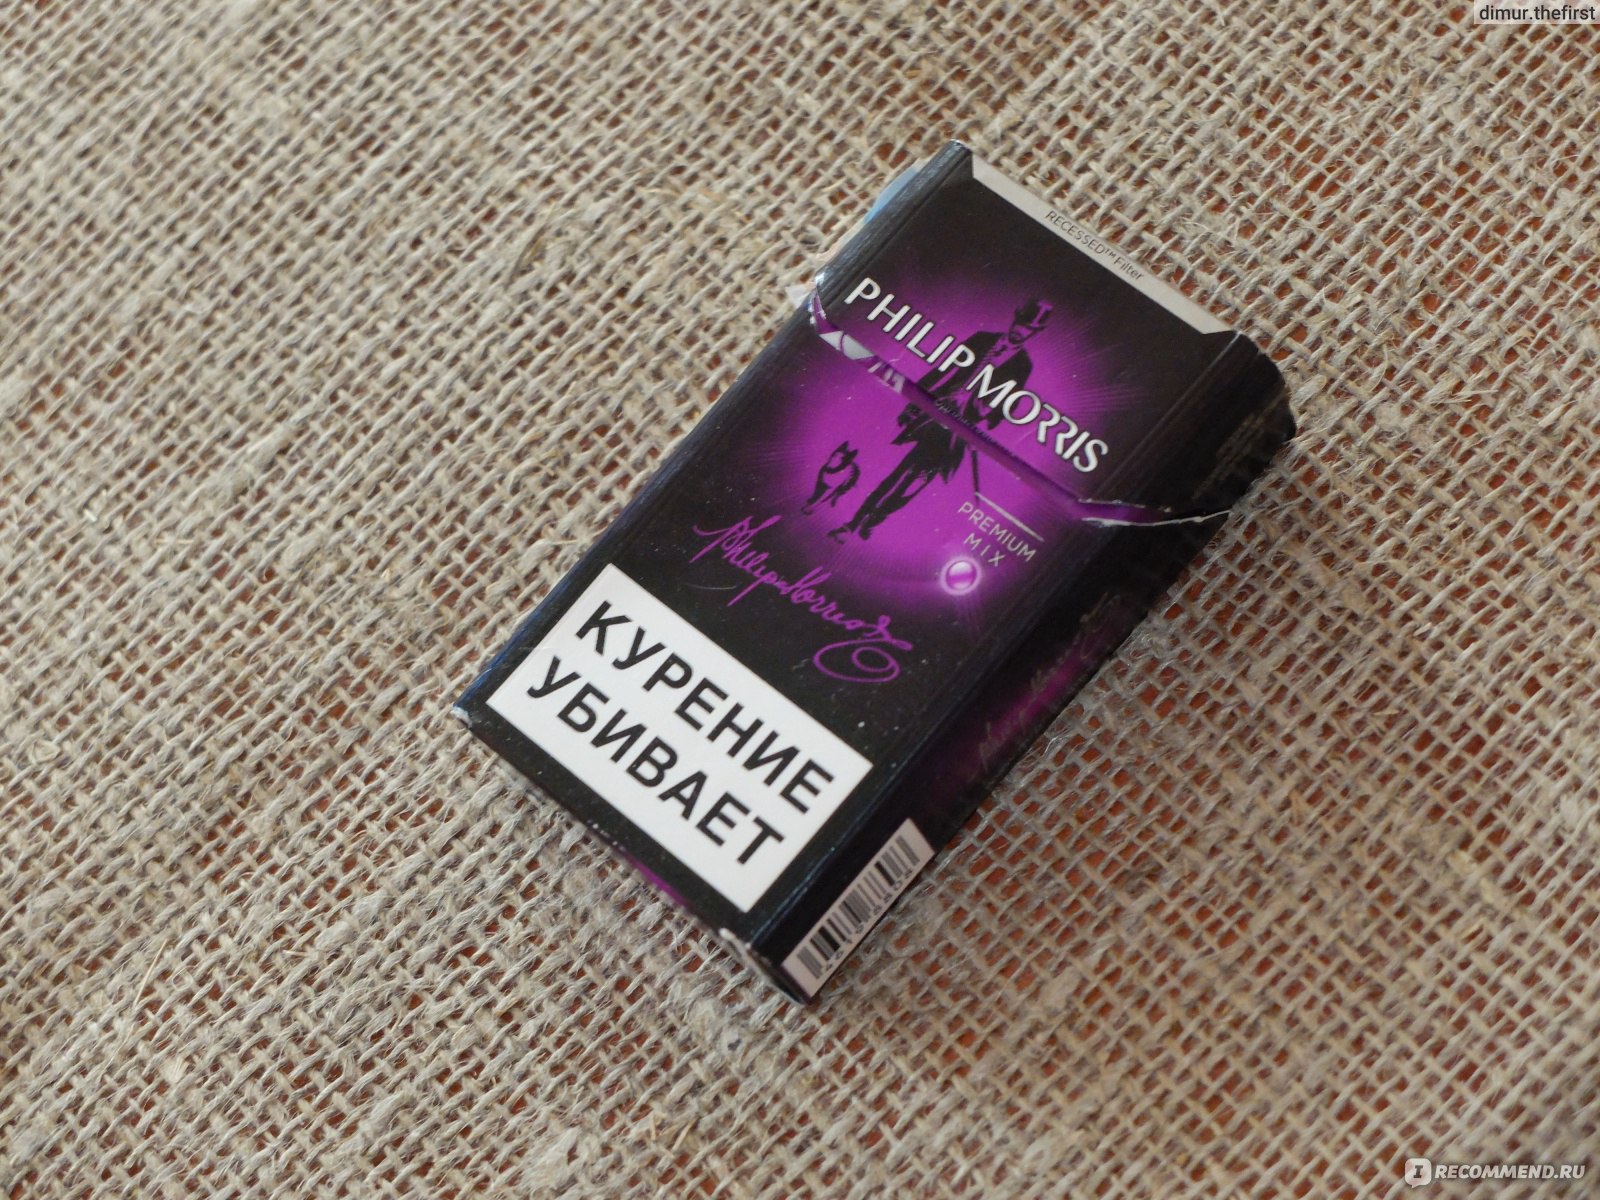 Сигареты филип моррис с кнопкой цена. Сигареты Филип Моррис с кнопкой фиолетовой. Сигареты Philip Morris с фиолетовой кнопкой.